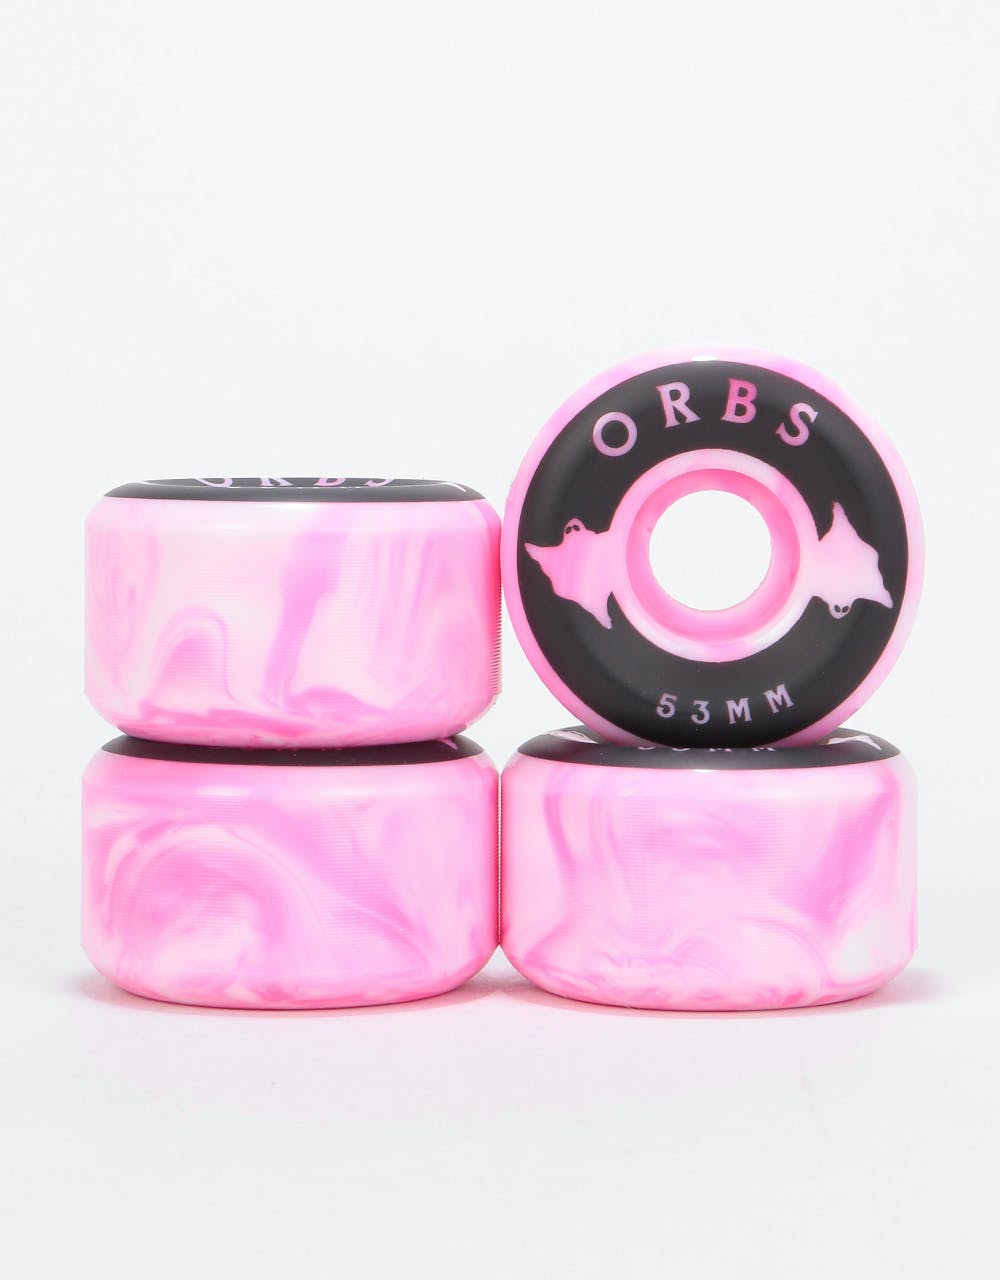 Orbs Specters Swirls Conical 99a Skateboard Wheel - 53mm